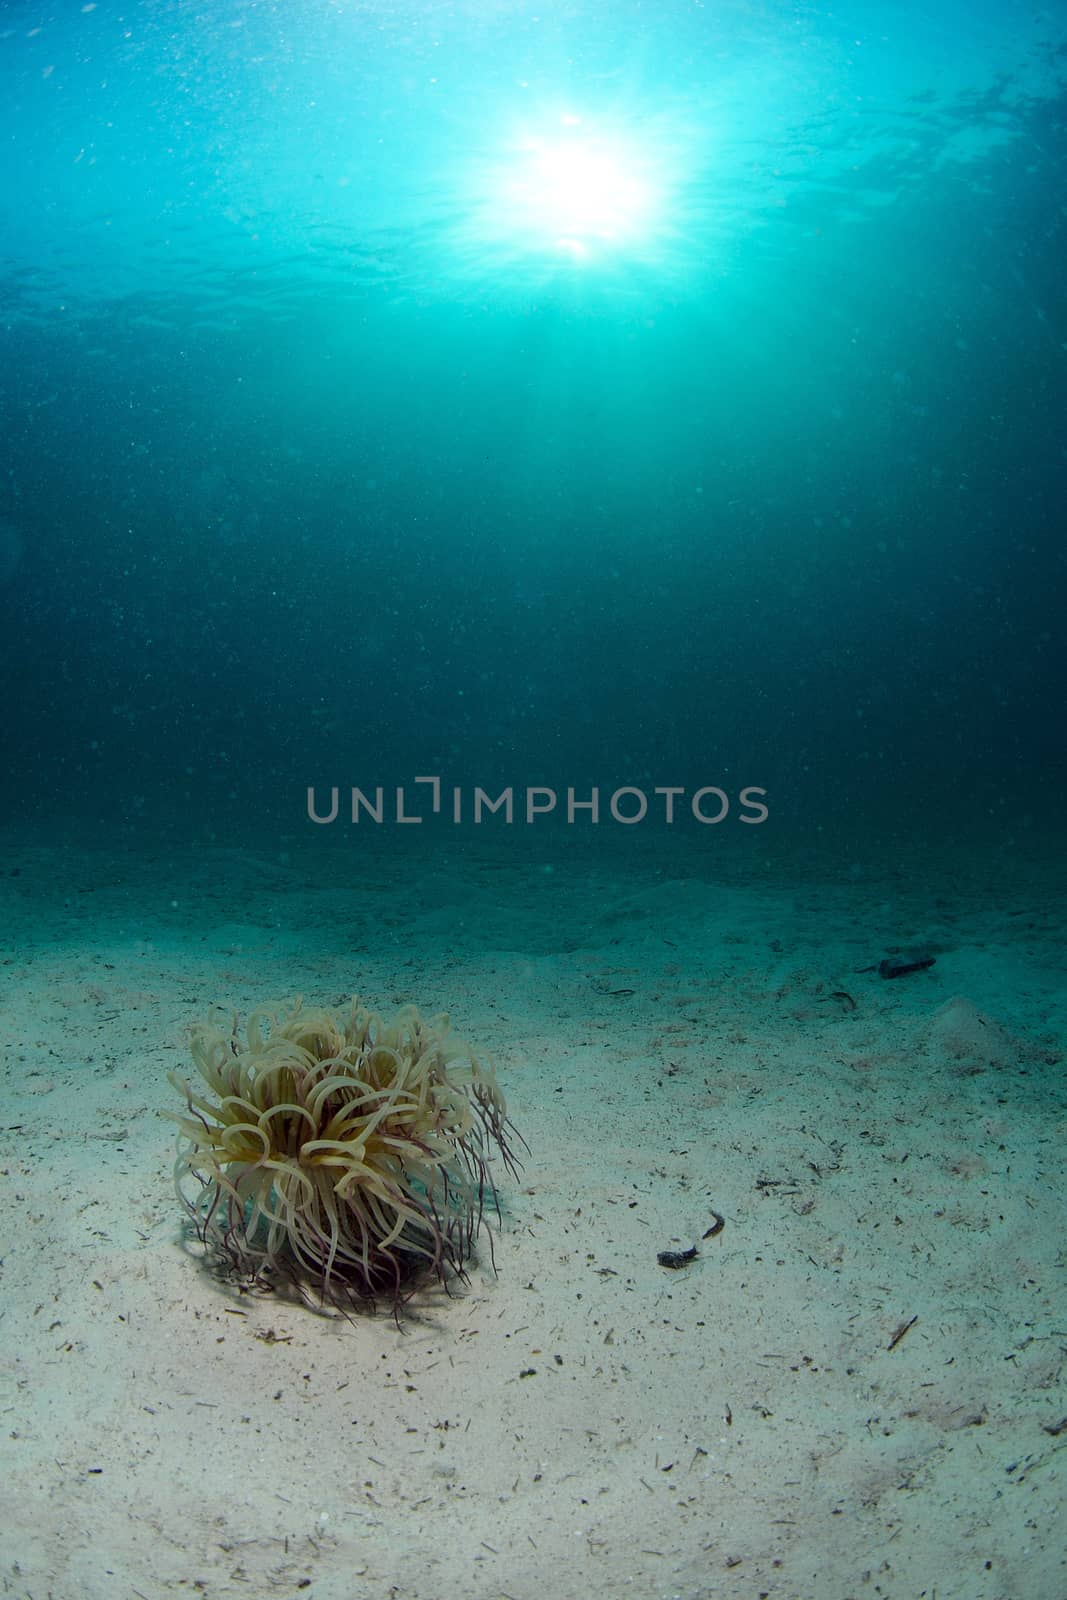 Wormtube near dive center in Mabul, Sipadan, Malaysia by think4photop